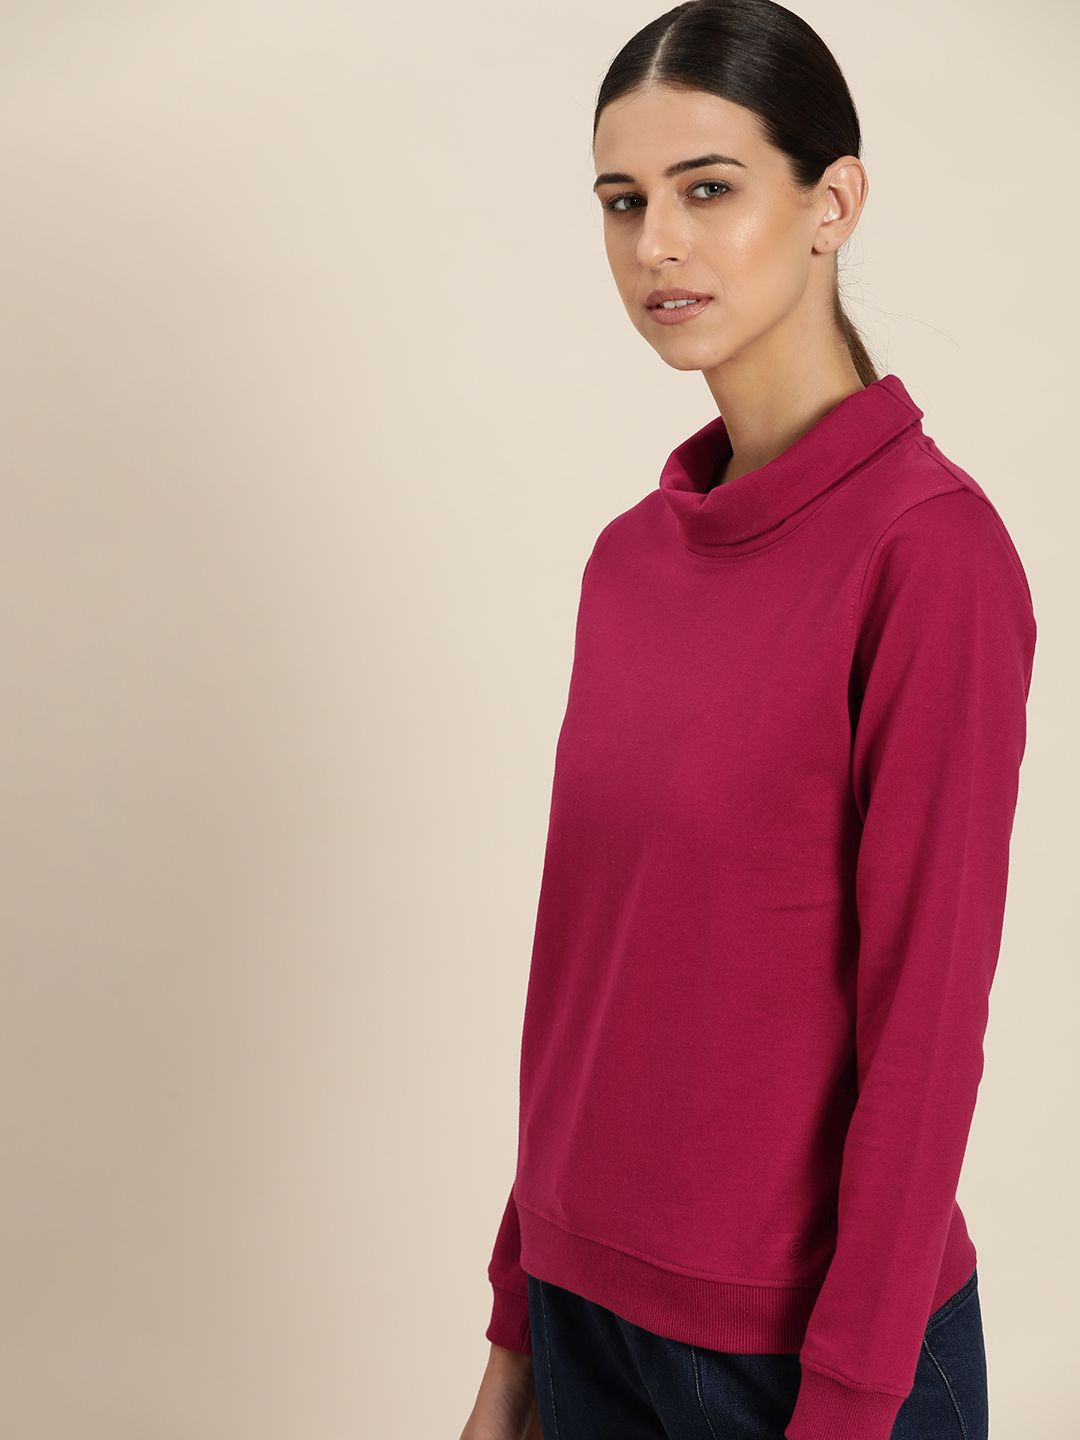 ether Women Maroon Solid Sweatshirt Price in India